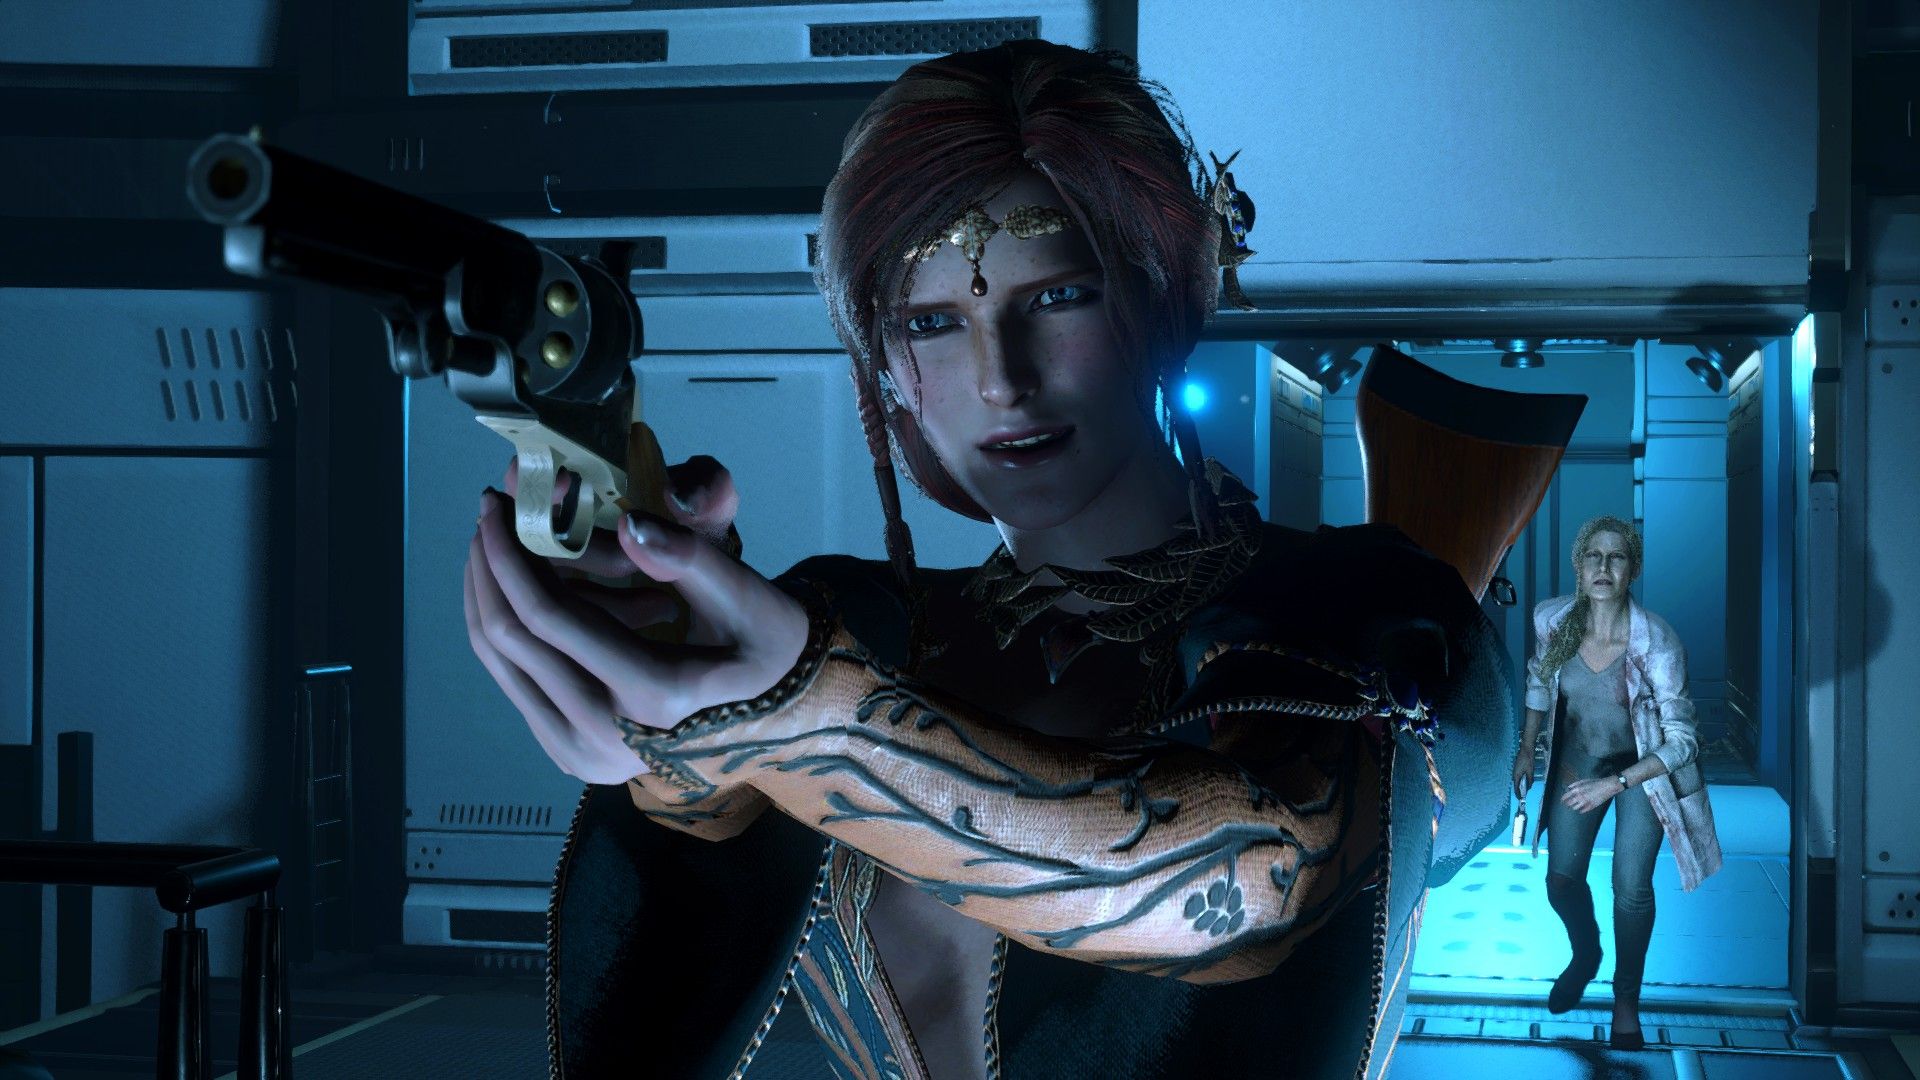 Трисс в Resident Evil 2.
Источник: Nexus Mods